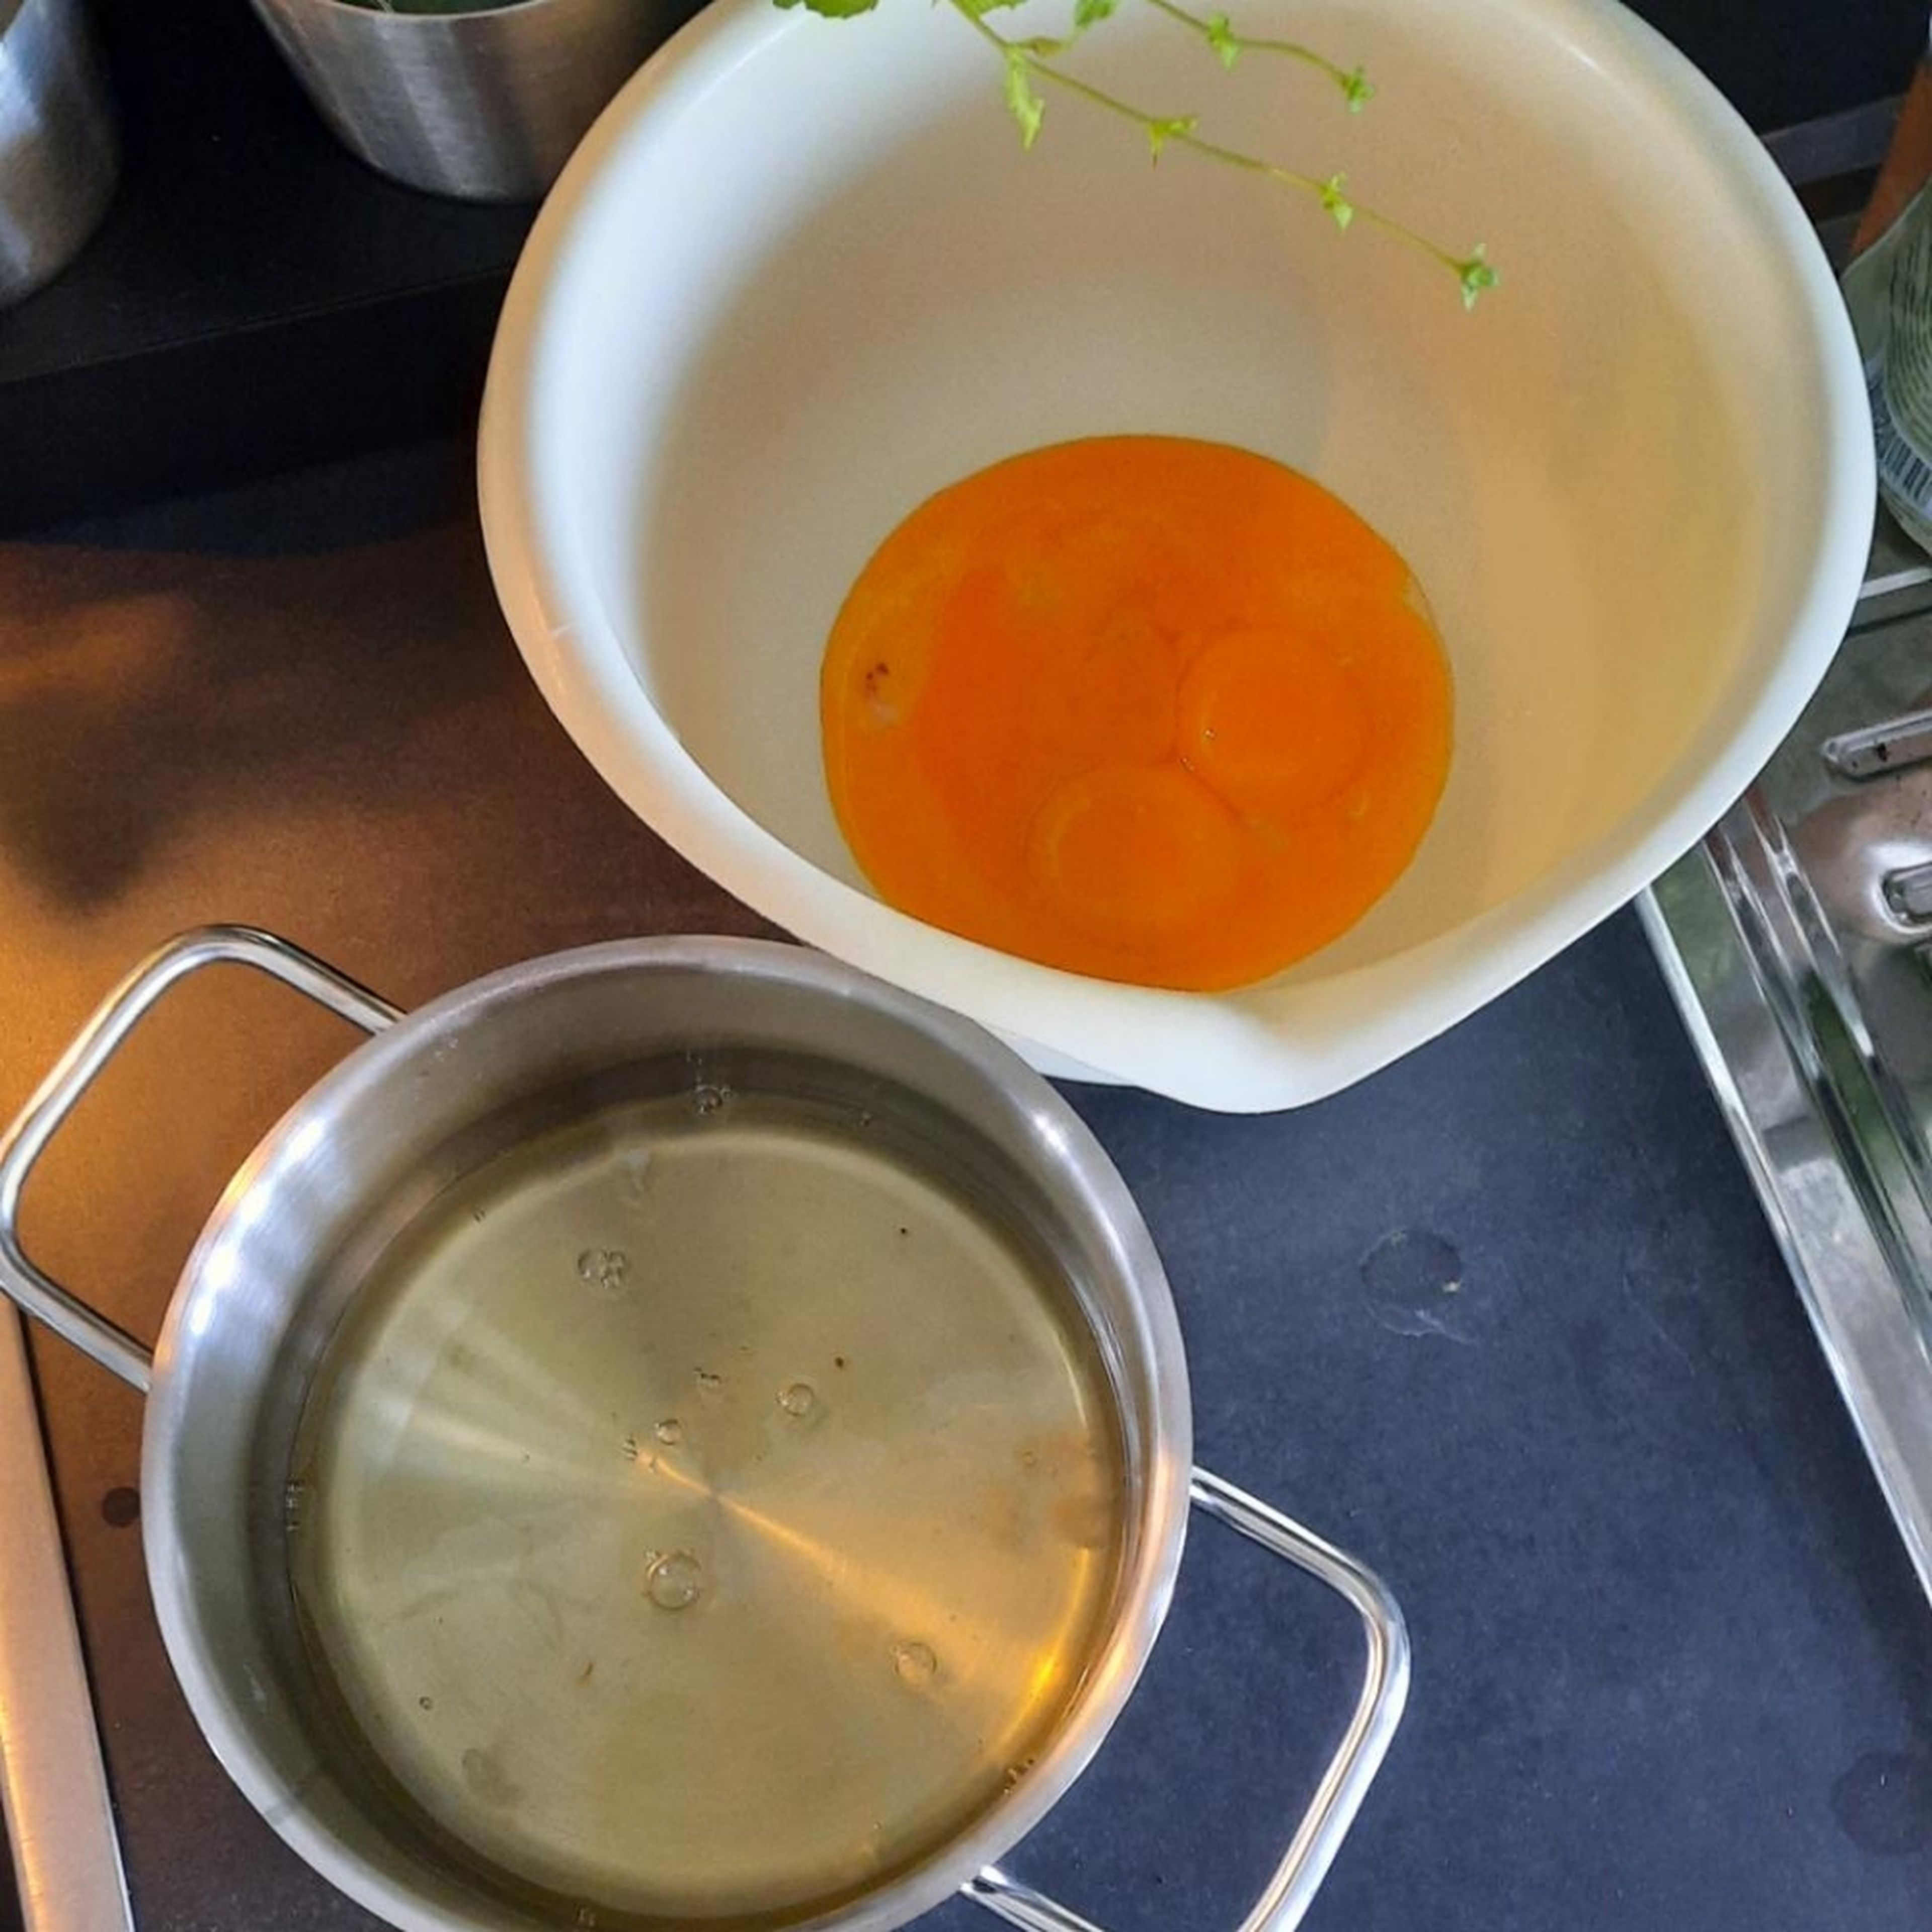 Backofen auf 180°C Umluft vorheizen. Die Eier trennen. Das Eigelb in eine große Schüssel geben und mit Wasser schaumig schlagen. 75g Zucker und Vanillezucker langsam einrieseln lassen und weiter schaumig schlagen.